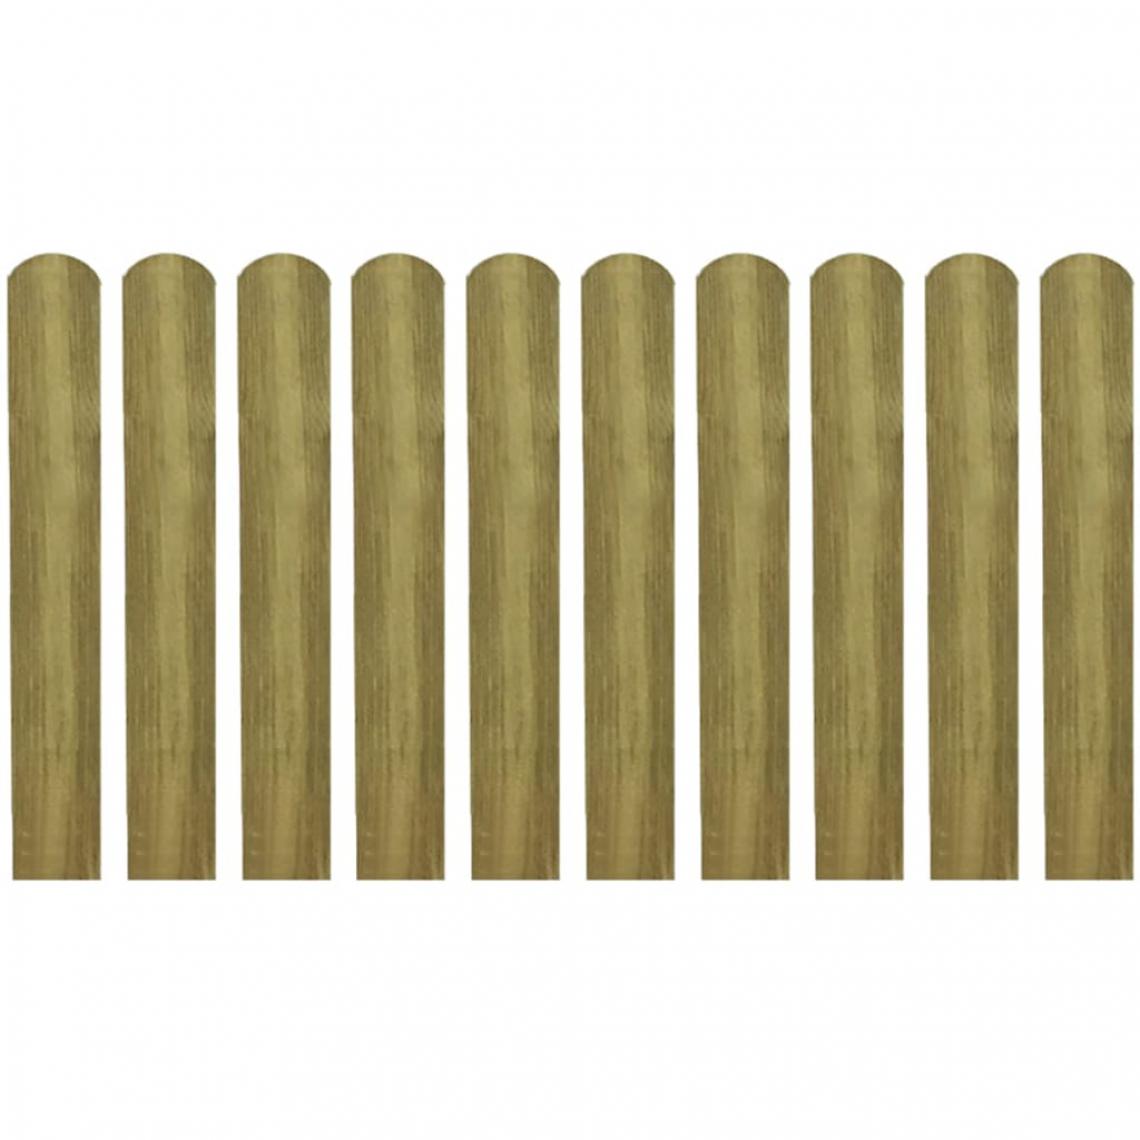 Vidaxl - vidaXL 30 pcs Lattes imprégnées de clôture Bois 60 cm - Clôture en bois